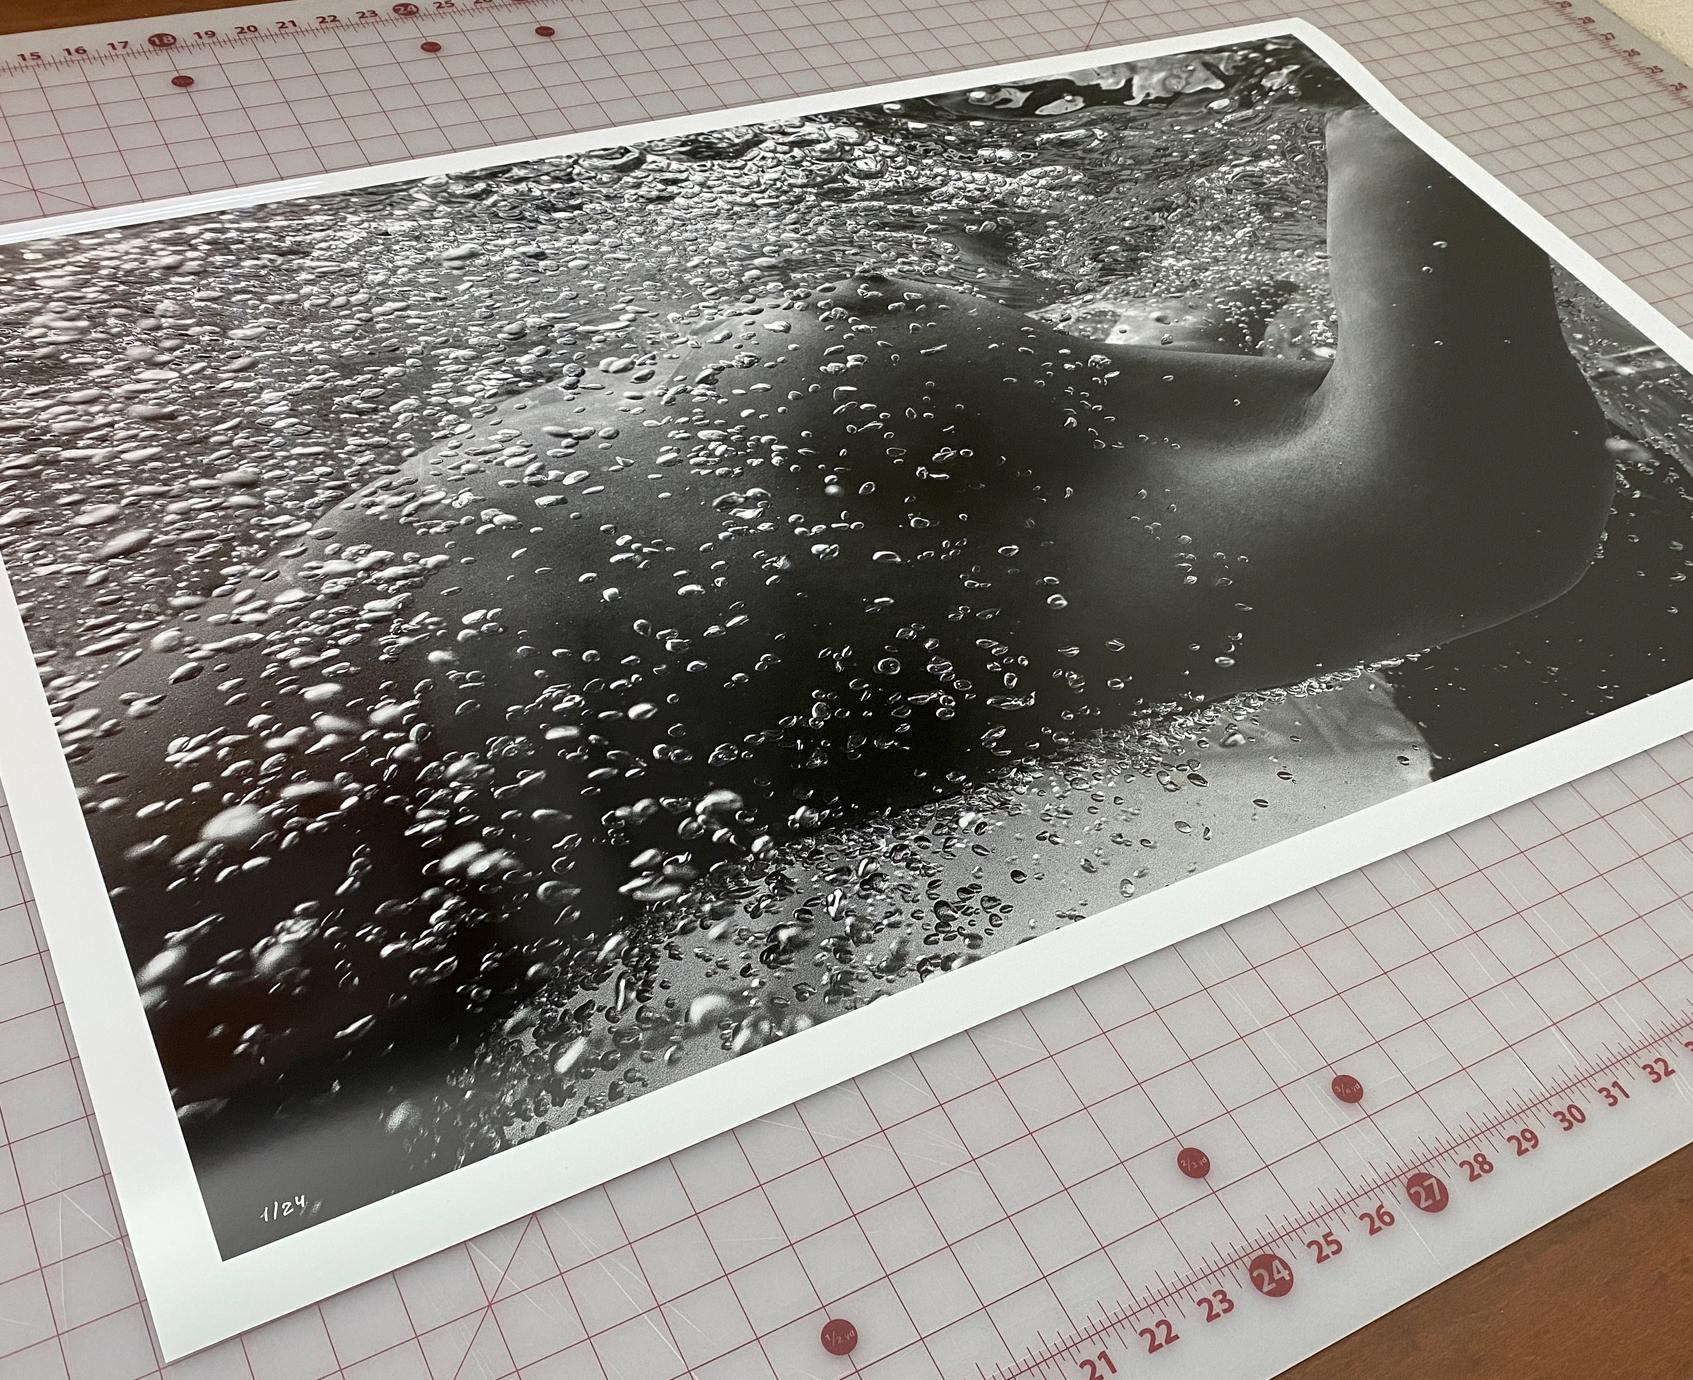 Bubbles - photographie de nu sous-marine b&w - impression pigmentaire d'archive 23 x 35 pouces - Contemporain Photograph par Alex Sher